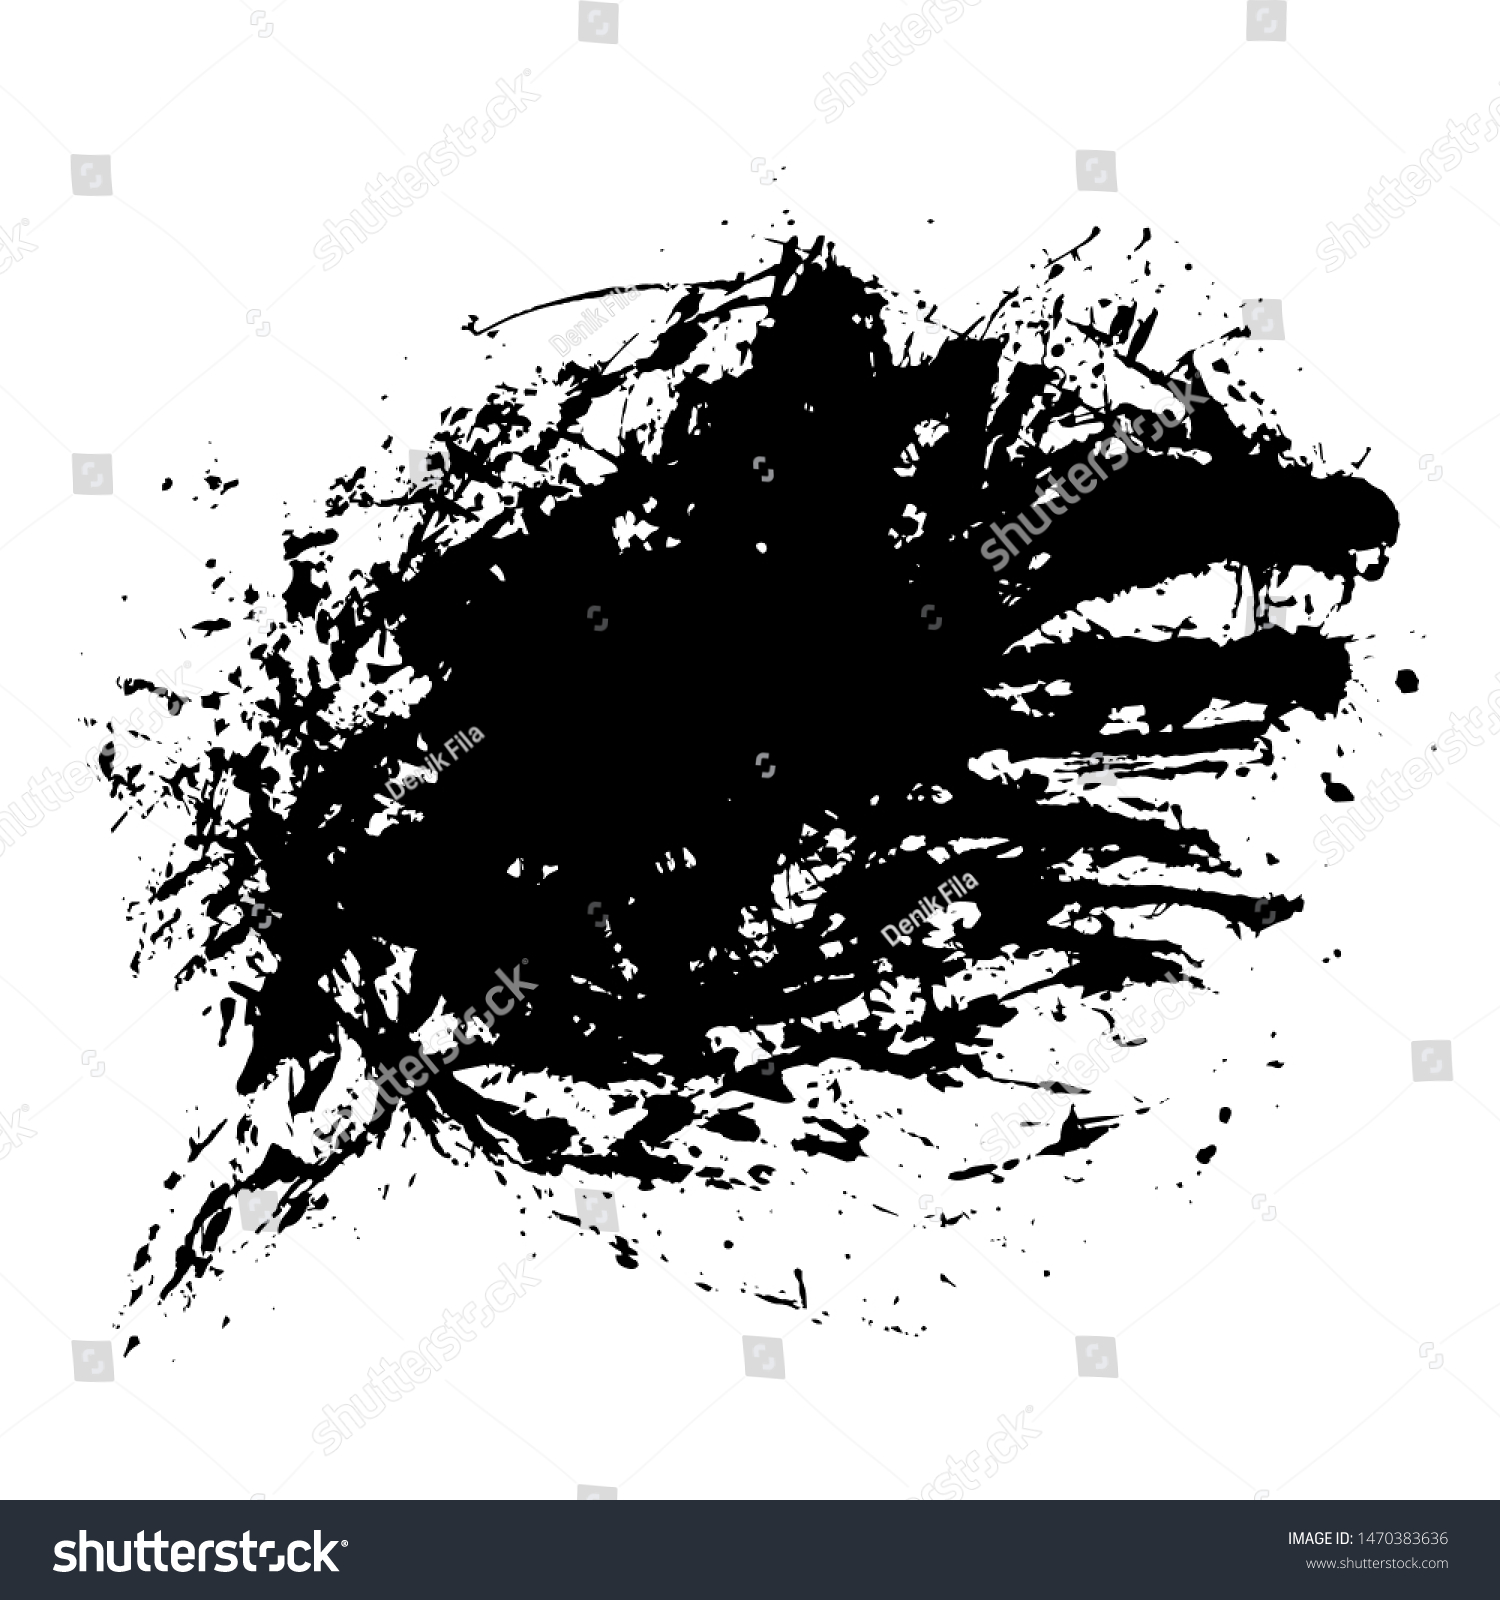 SVG of Grunge Ink Paintbrush Splattered Vector Art for Cover, Poster, Flyer, Brochure, Banner, Background or Wallpaper Design Download svg